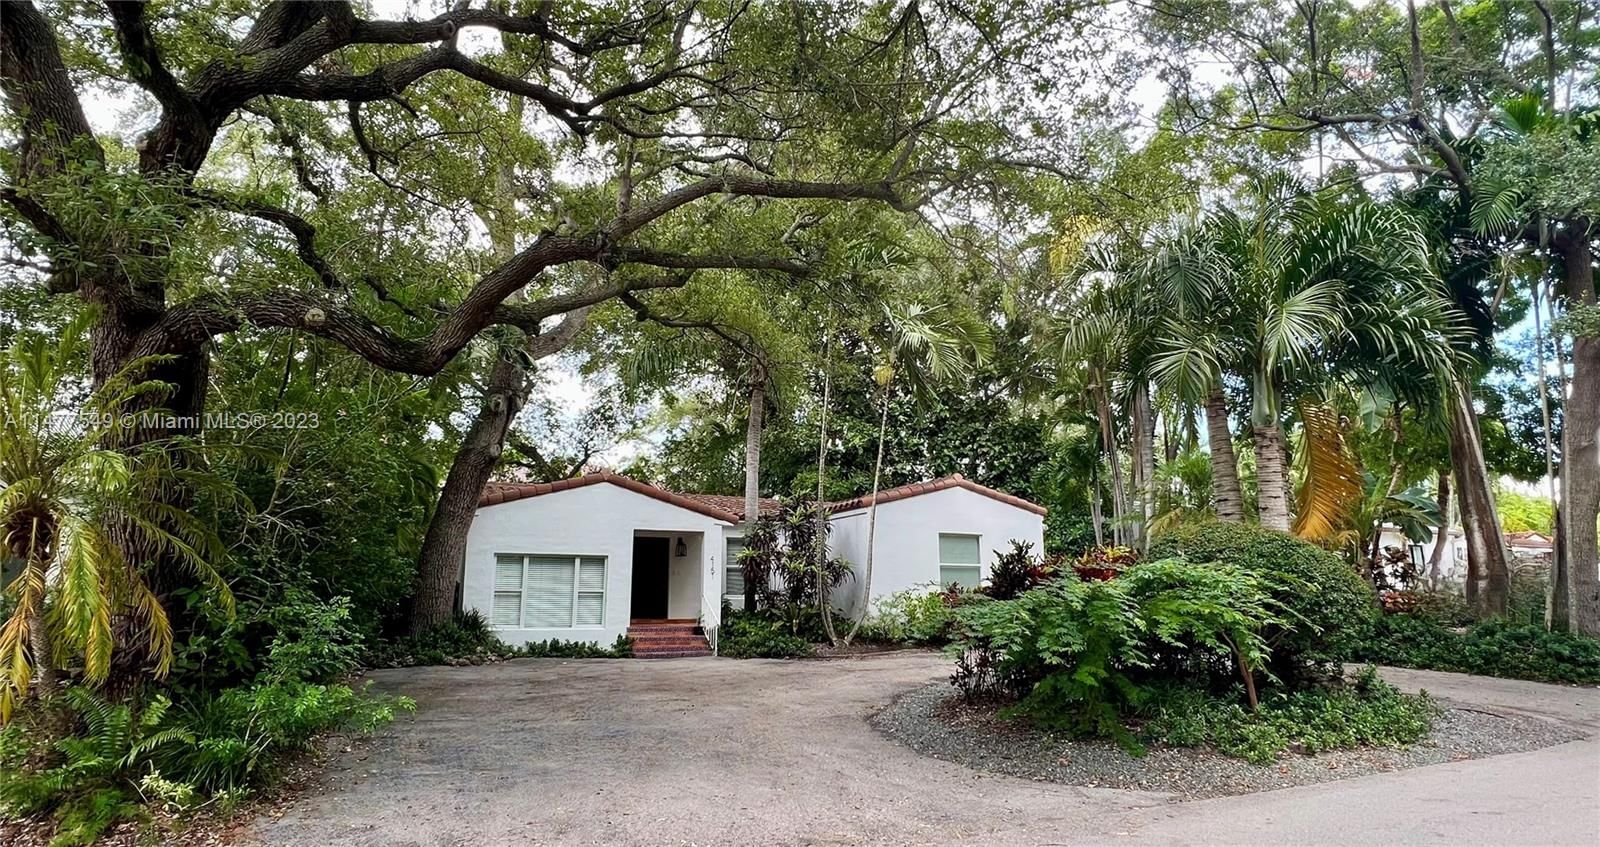 Real estate property located at 4151 Barbarossa Ave, Miami-Dade County, ELEDA, Miami, FL